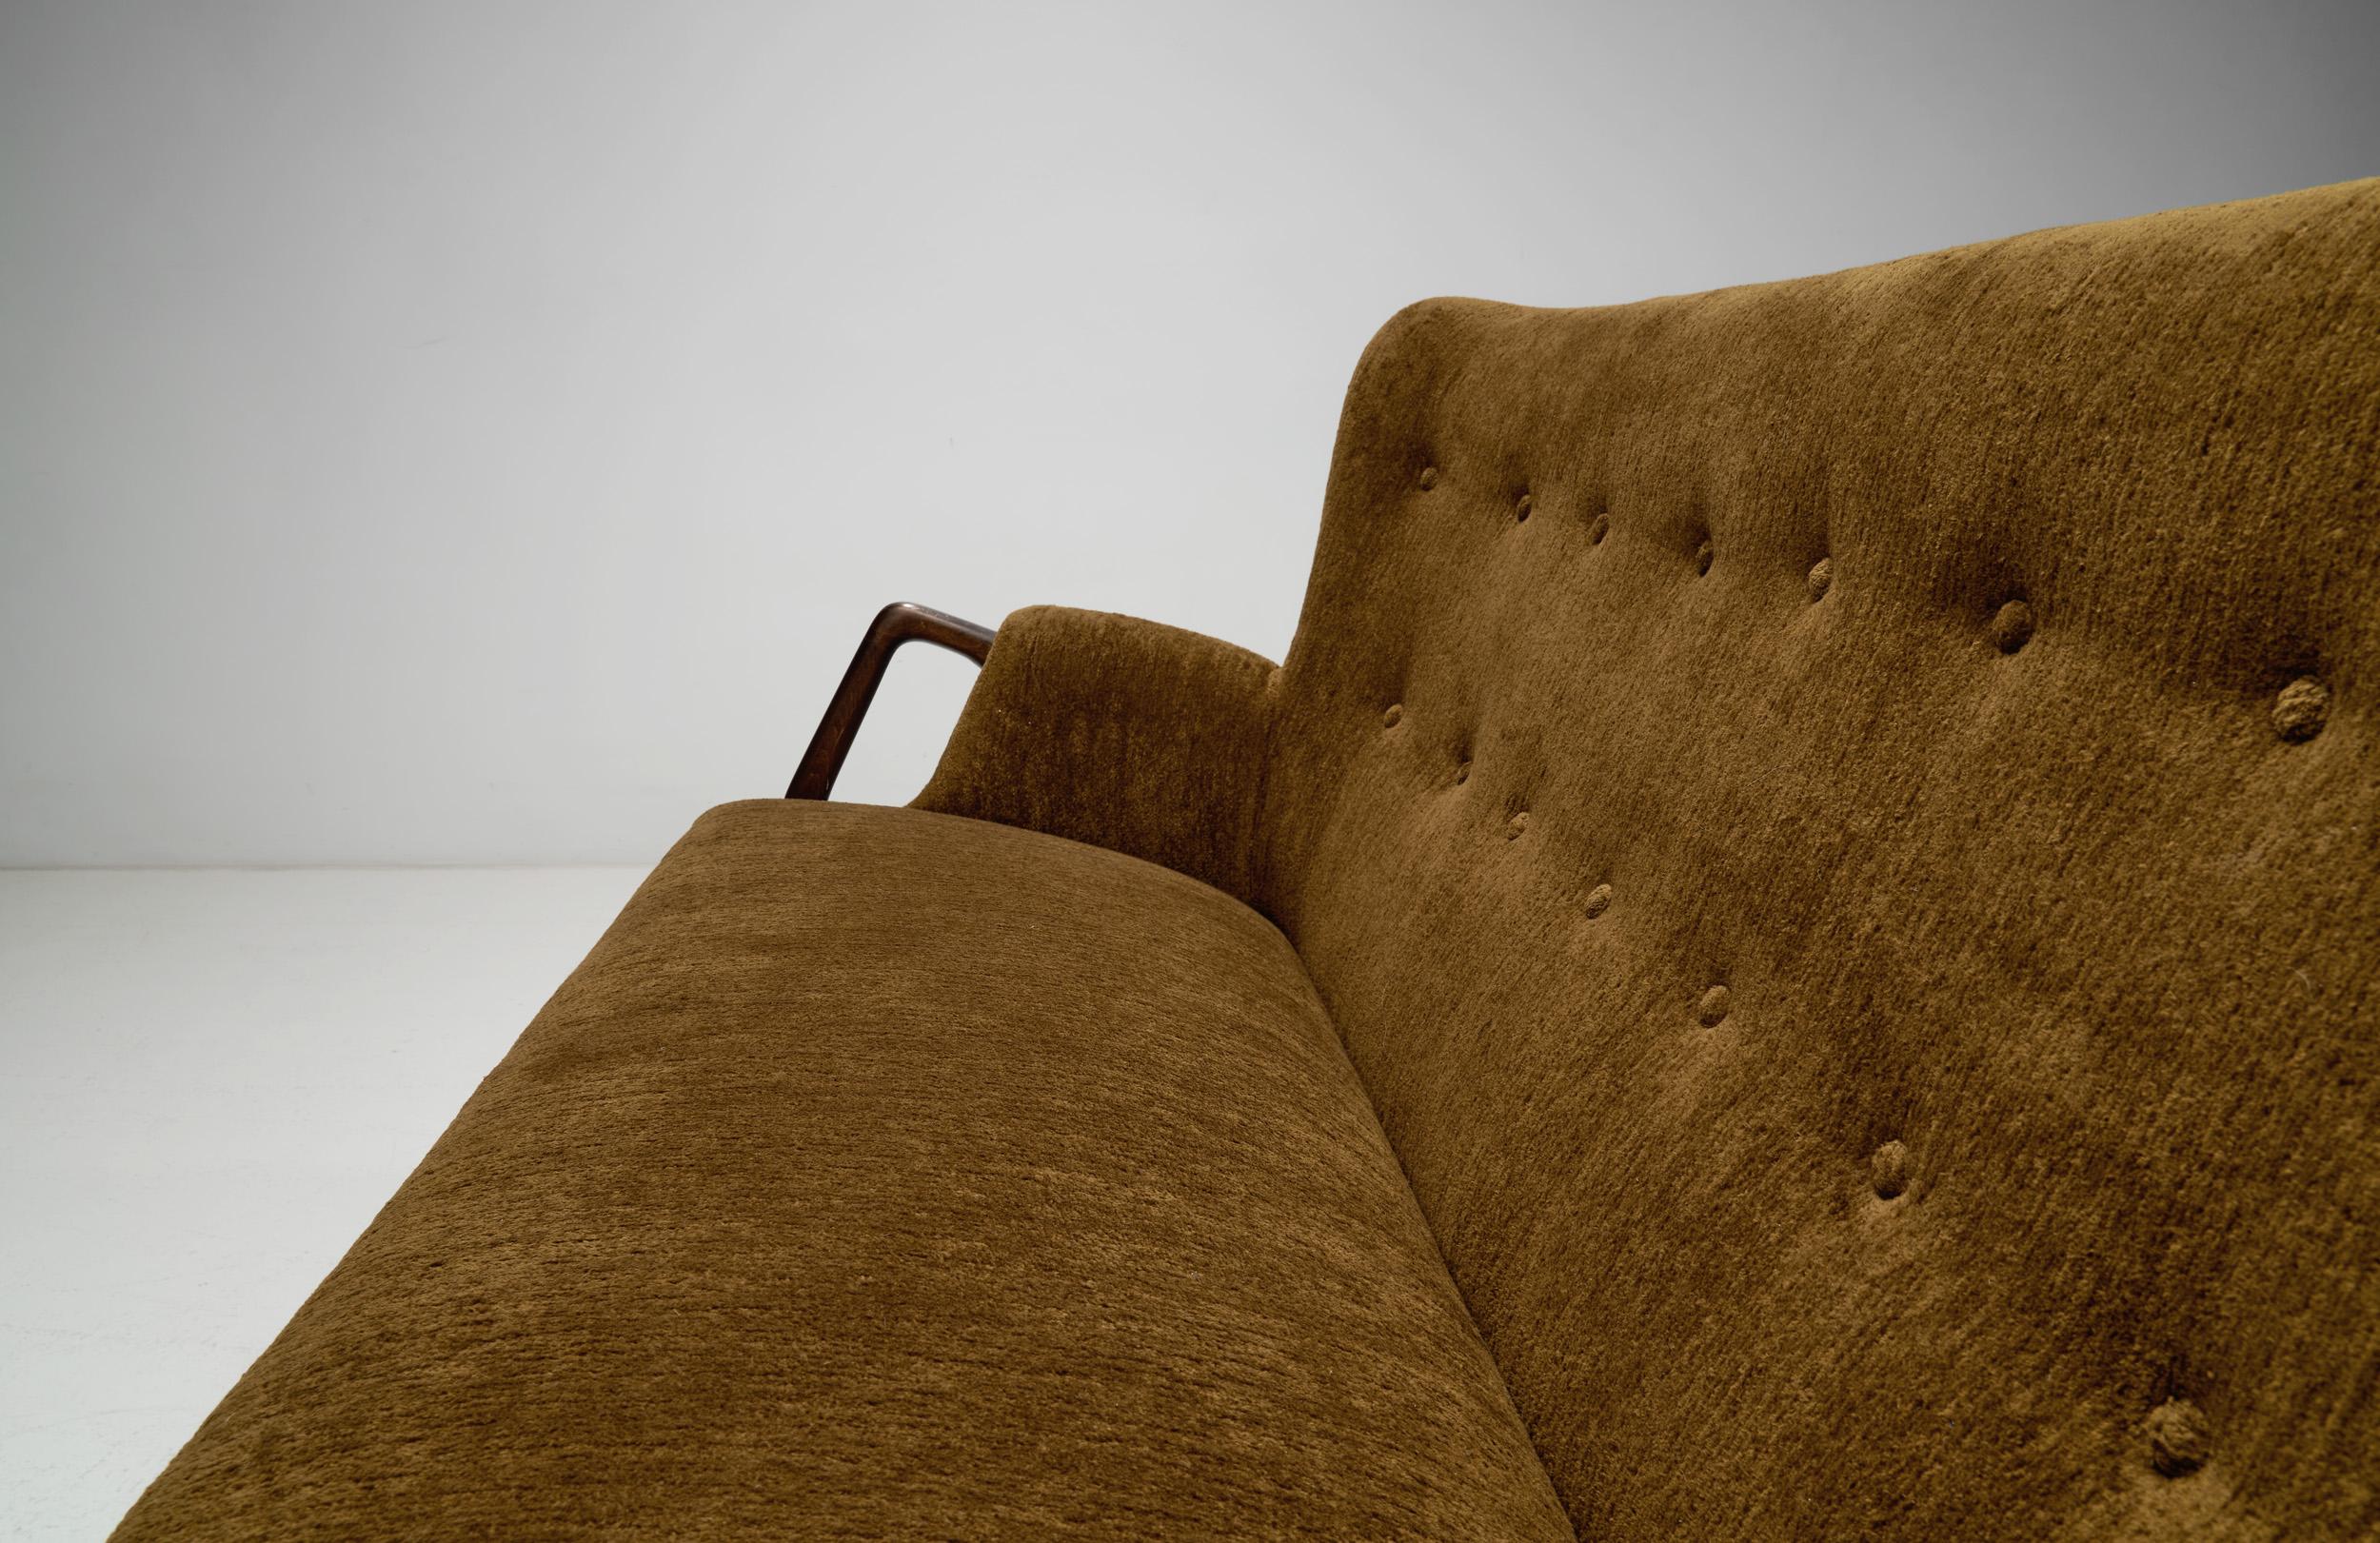 Fabric “Model 214” Two-Seater Sofa by Kurt Olsen for Slagelse Møbelværk, Denmark 1960s